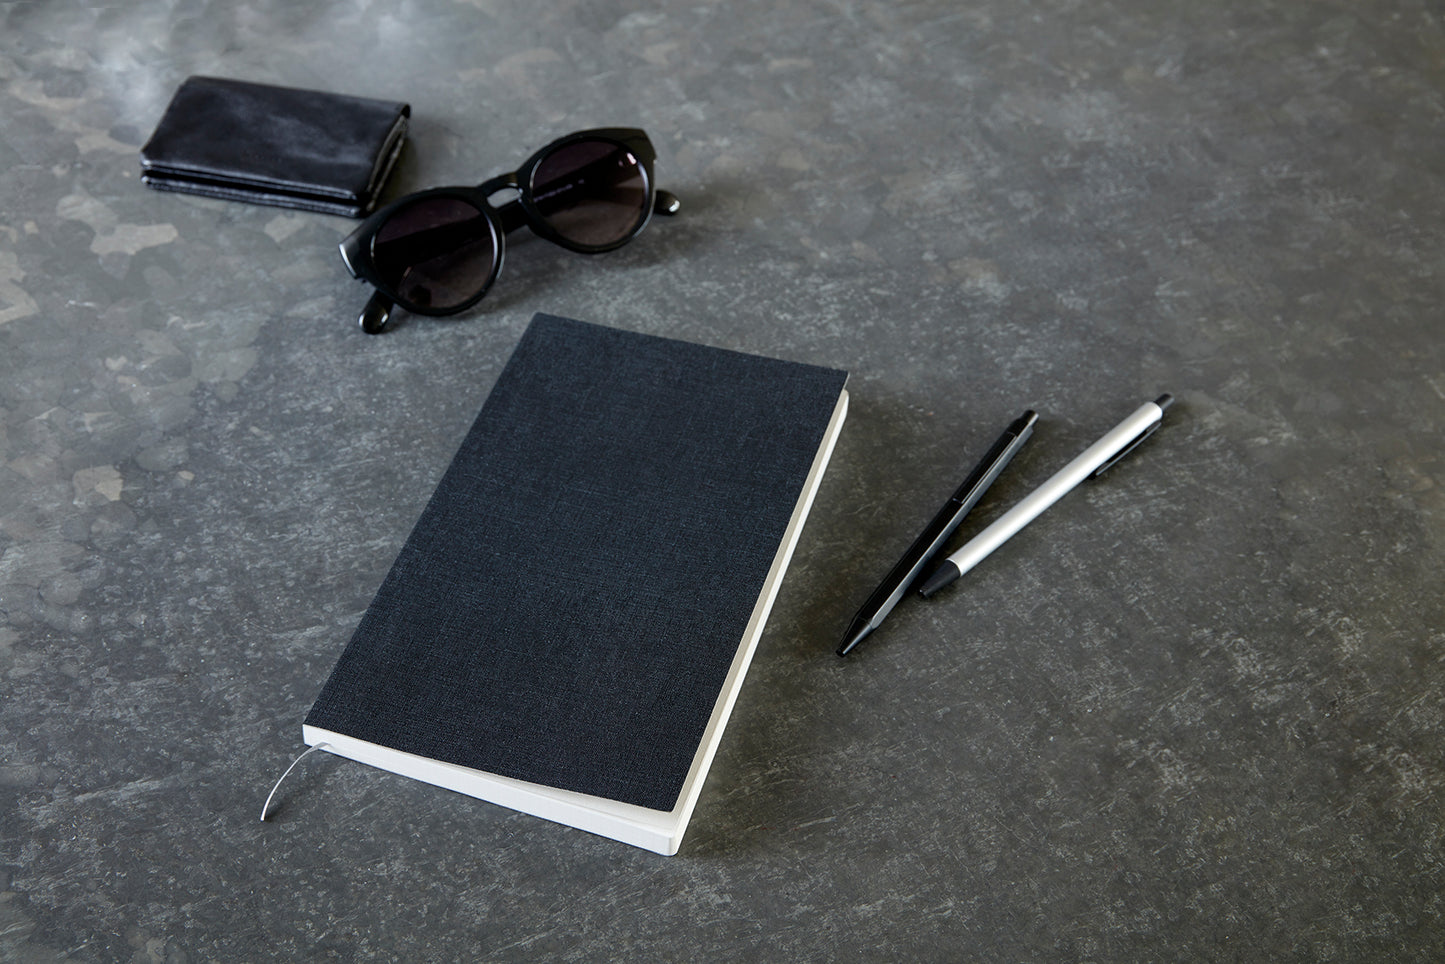 Notebook Black (Grid)